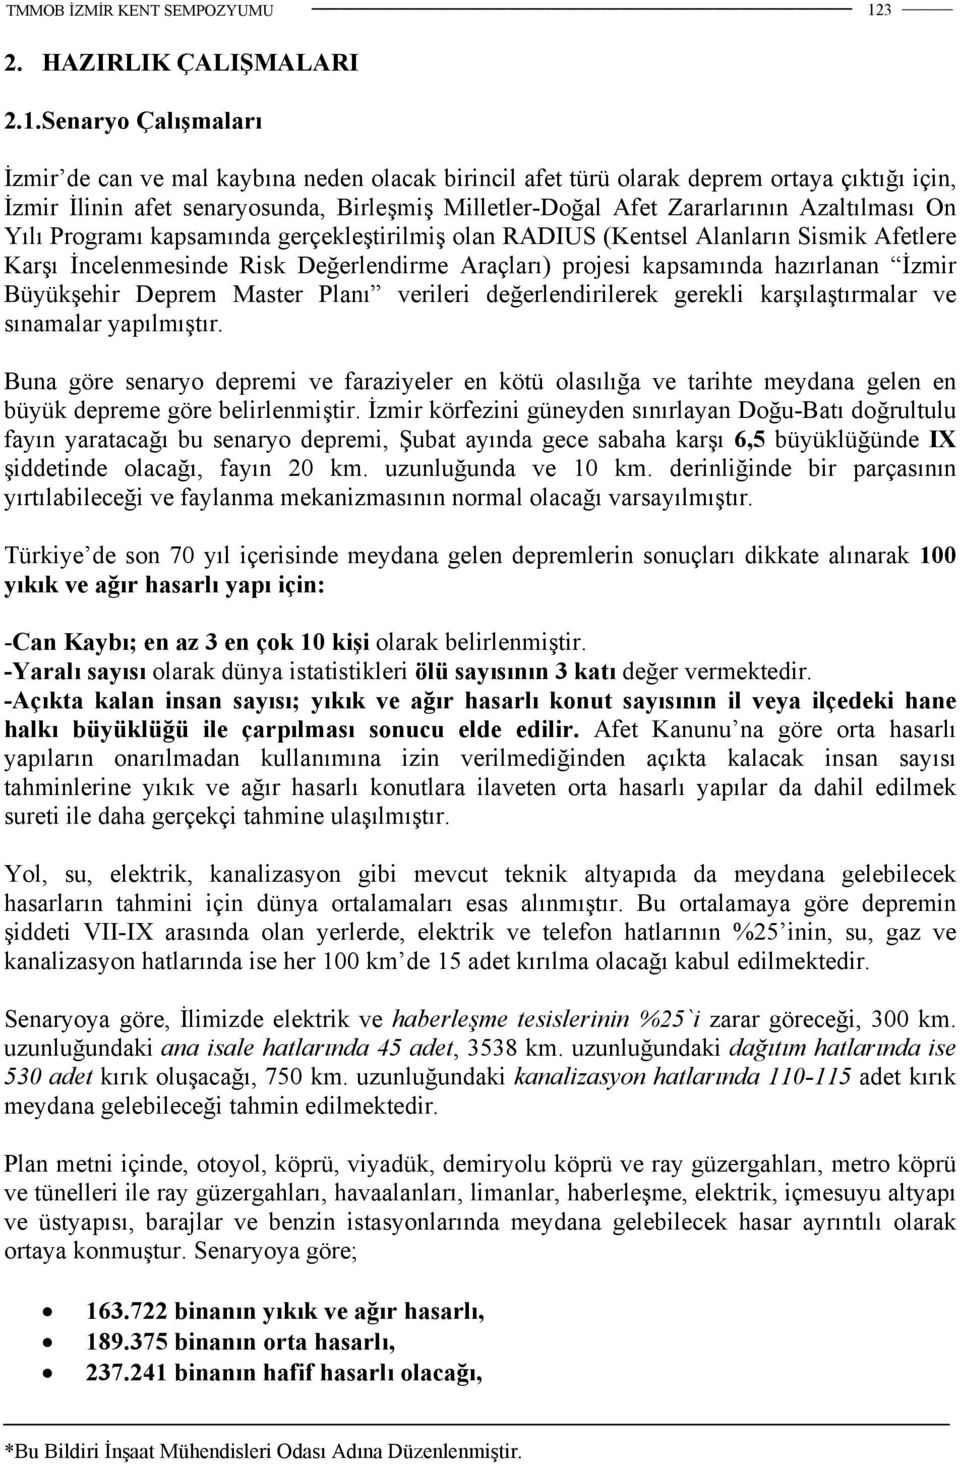 kapsamında hazırlanan İzmir Büyükşehir Deprem Master Planı verileri değerlendirilerek gerekli karşılaştırmalar ve sınamalar yapılmıştır.